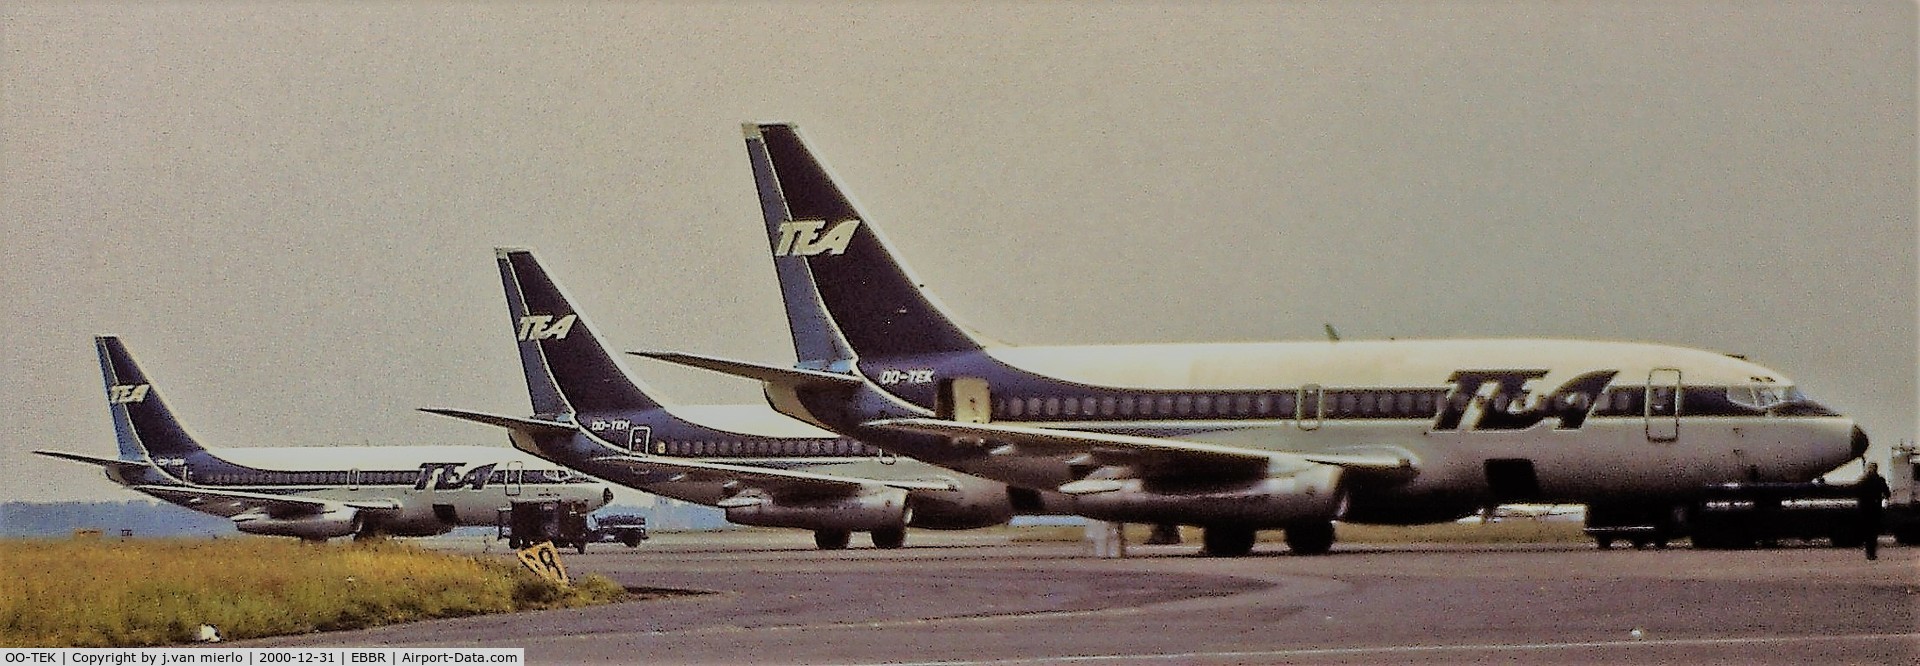 OO-TEK, 1978 Boeing 737-2Q9 C/N 21719, scan slide